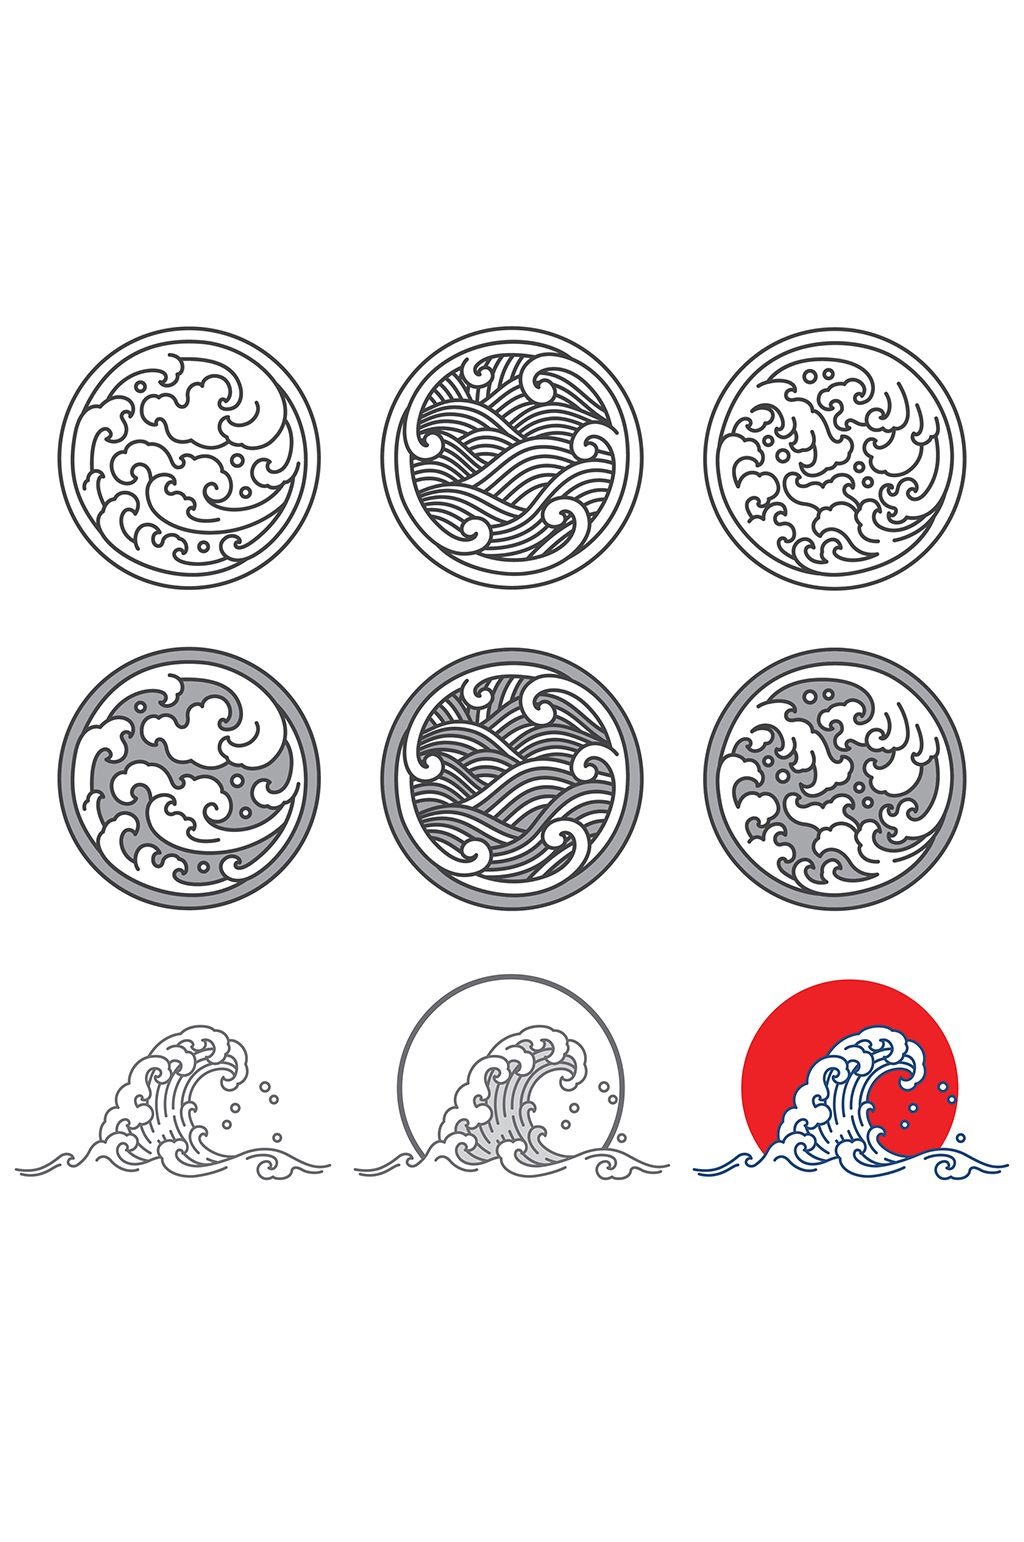 中国古代花纹图案海浪图片